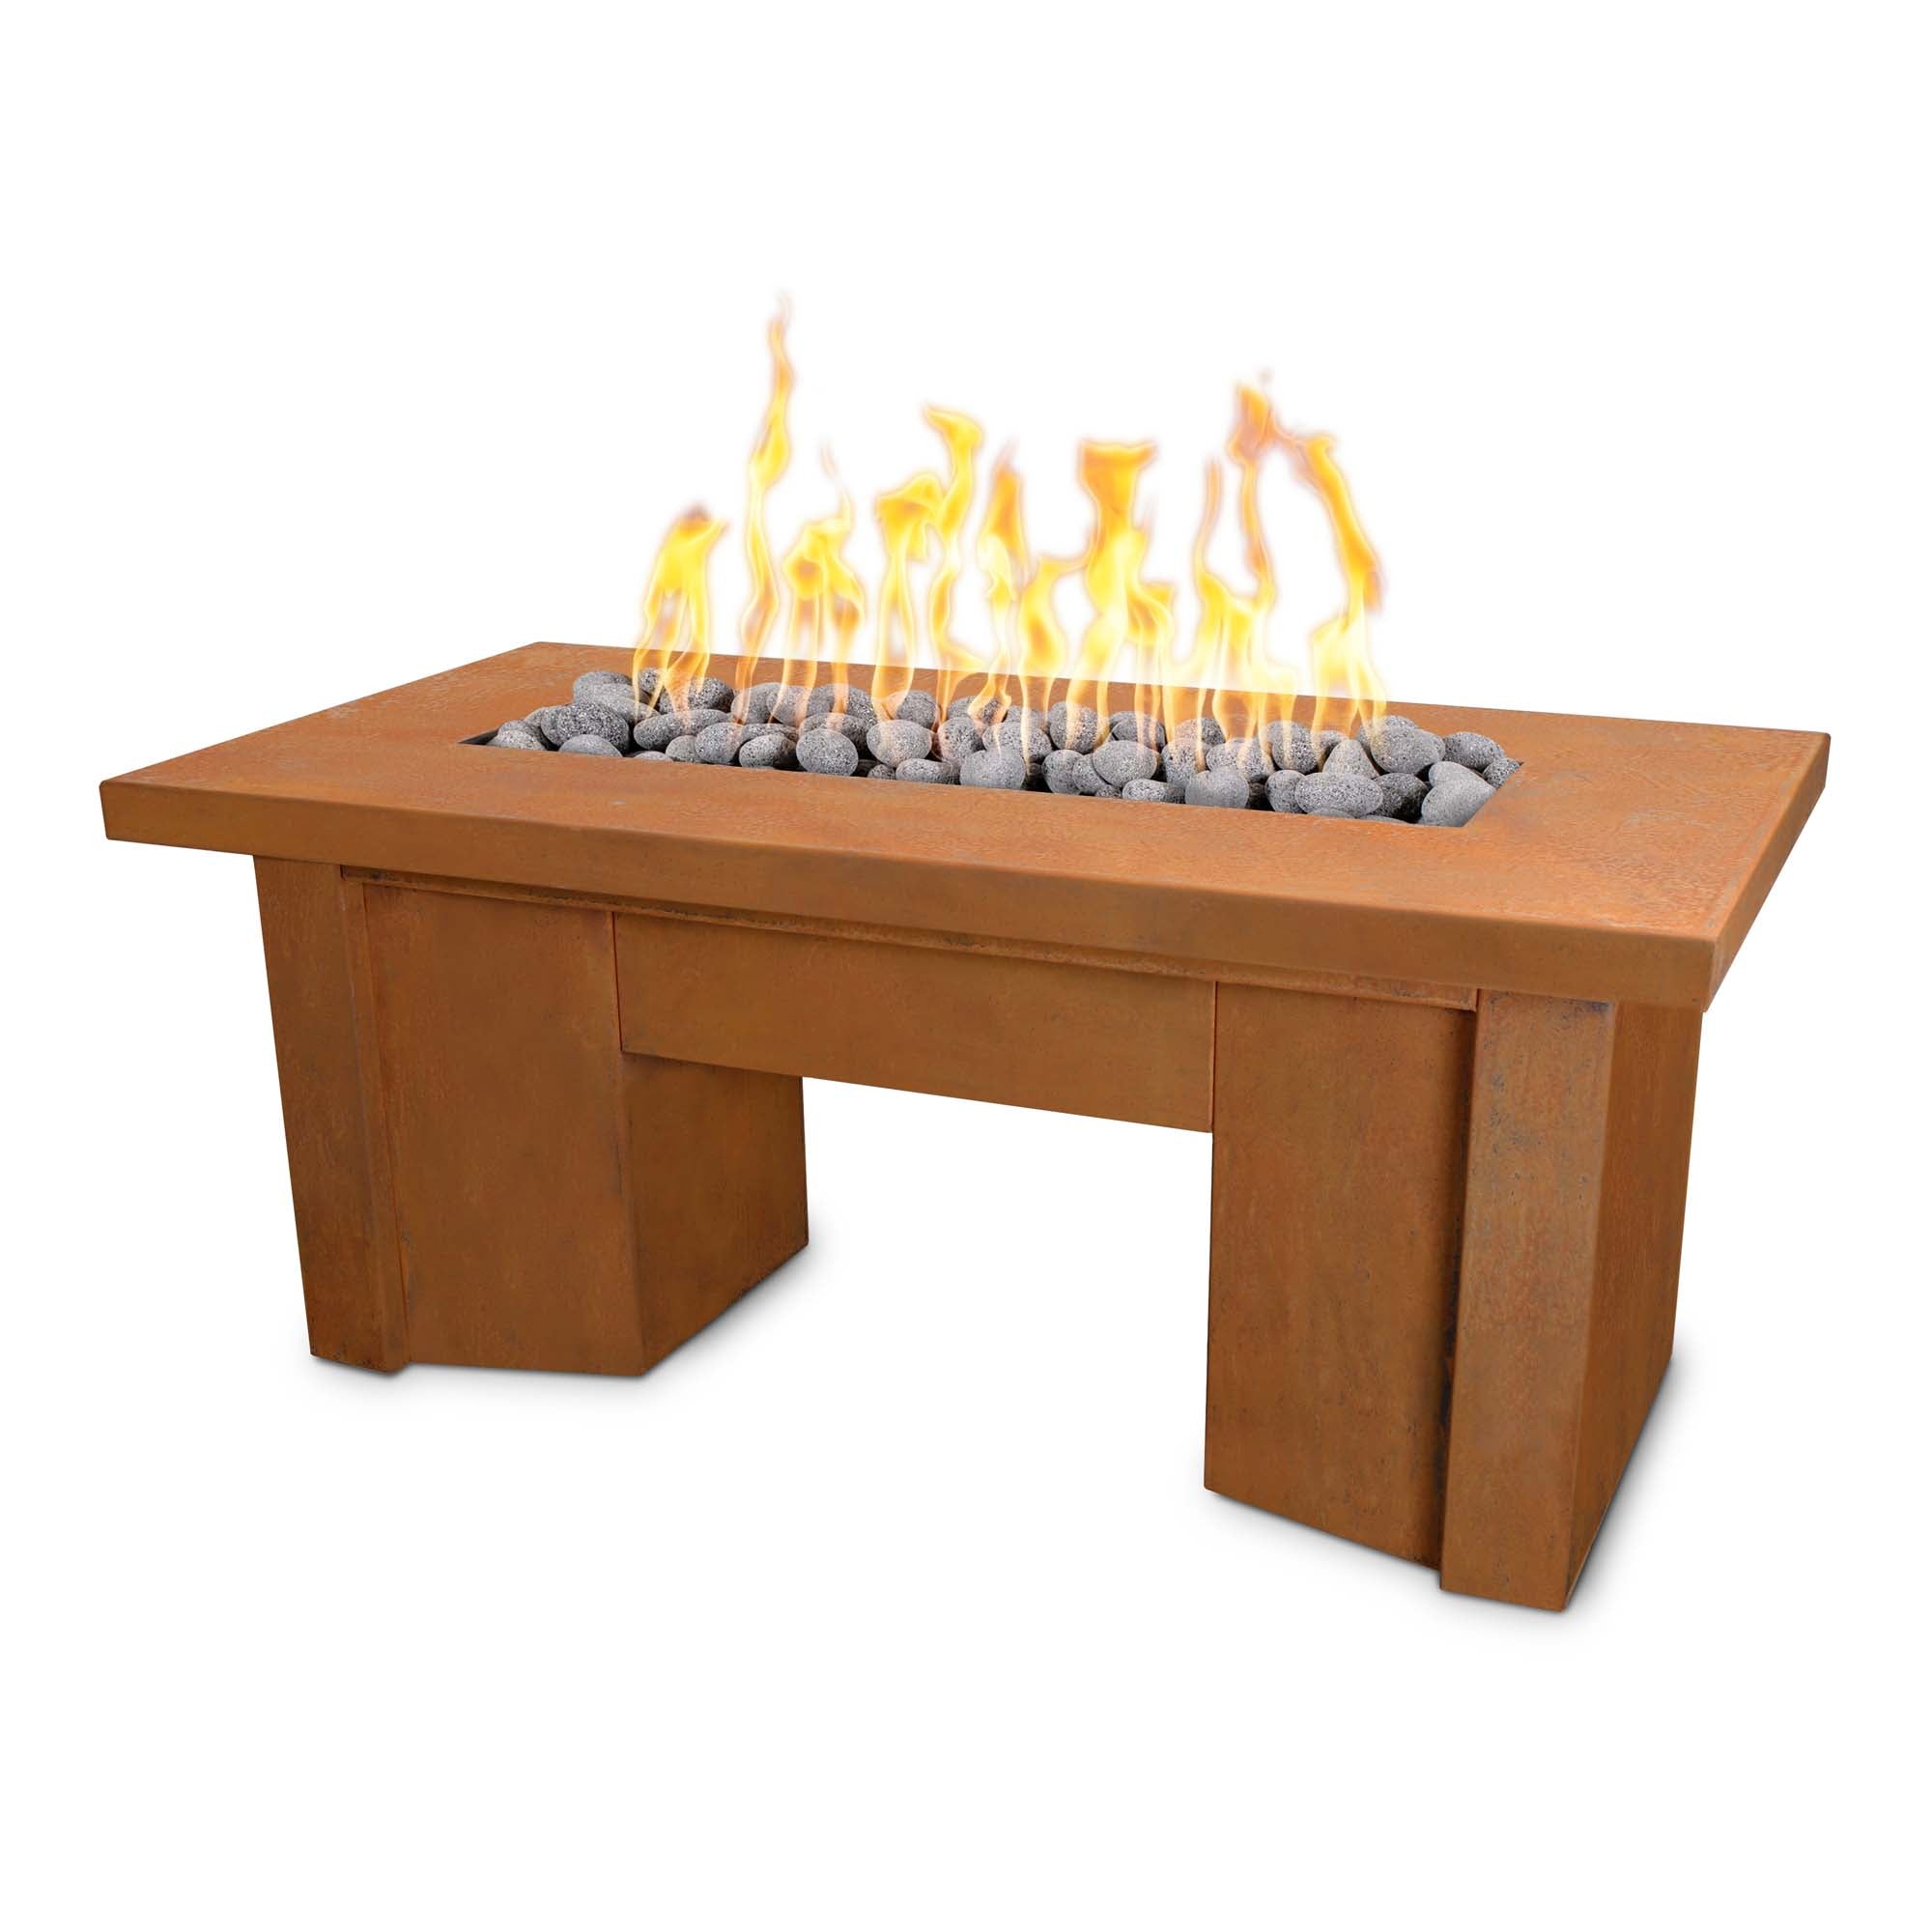 The Outdoor Plus Alameda Corten Steel Fire Table